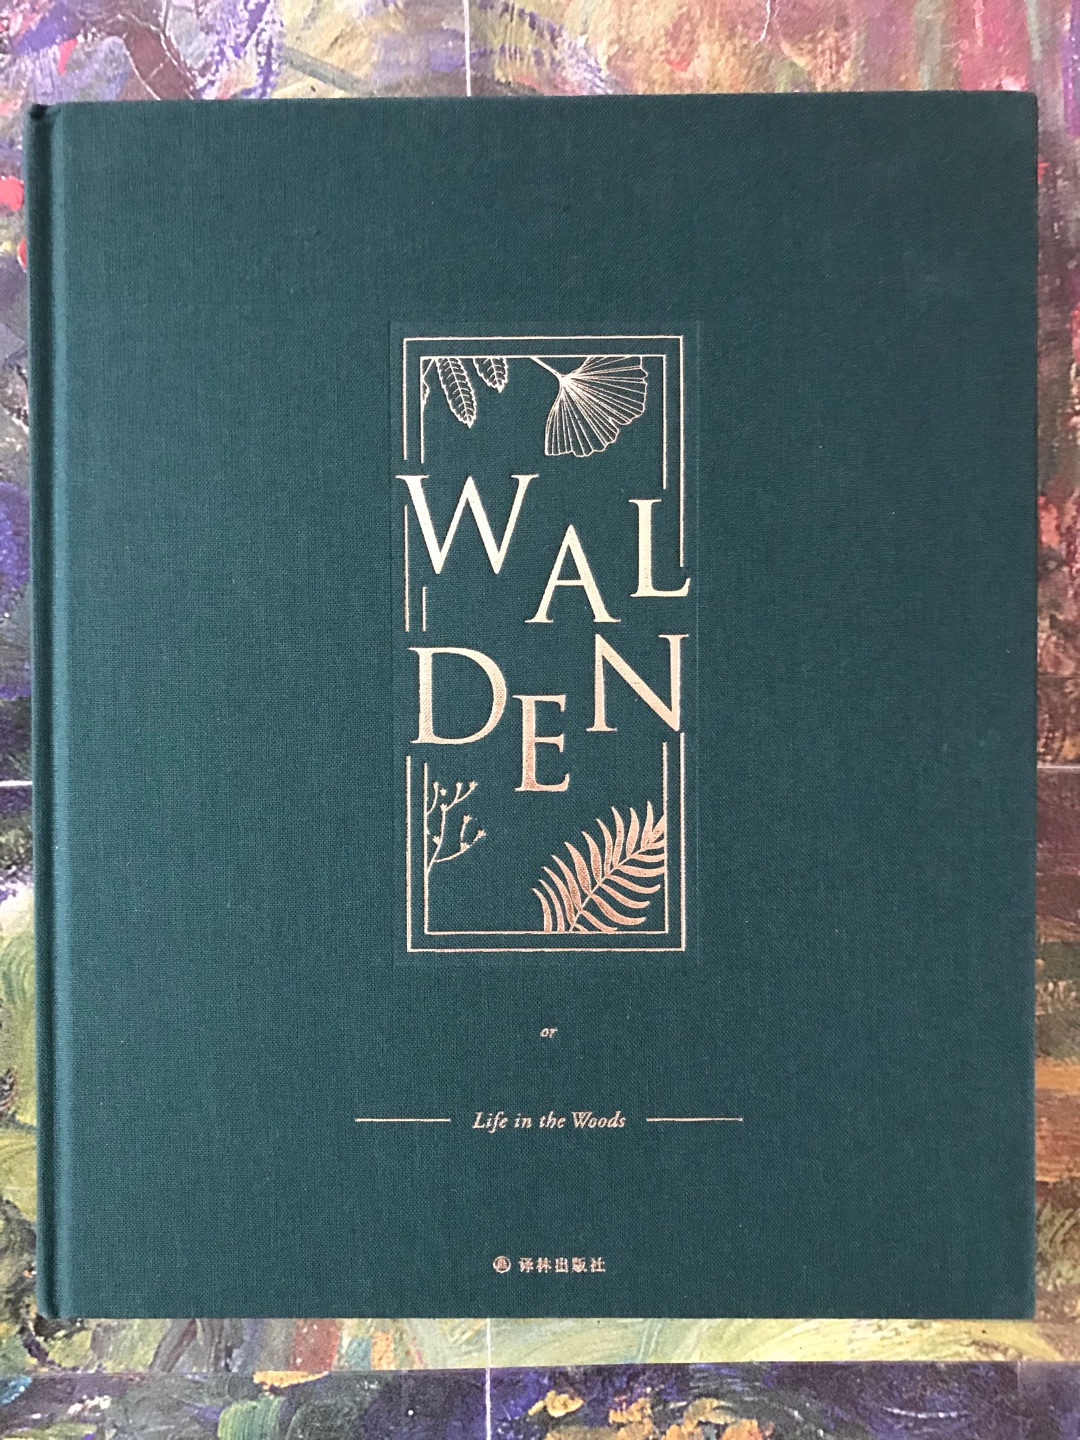 译林的这个纪念版是绿色布面精装，12开本，收入大量瓦尔登湖自然风光的彩照。修订后的译文比旧版更简练精确，也没那么明显的翻译腔，还带点早期白话文的味道。